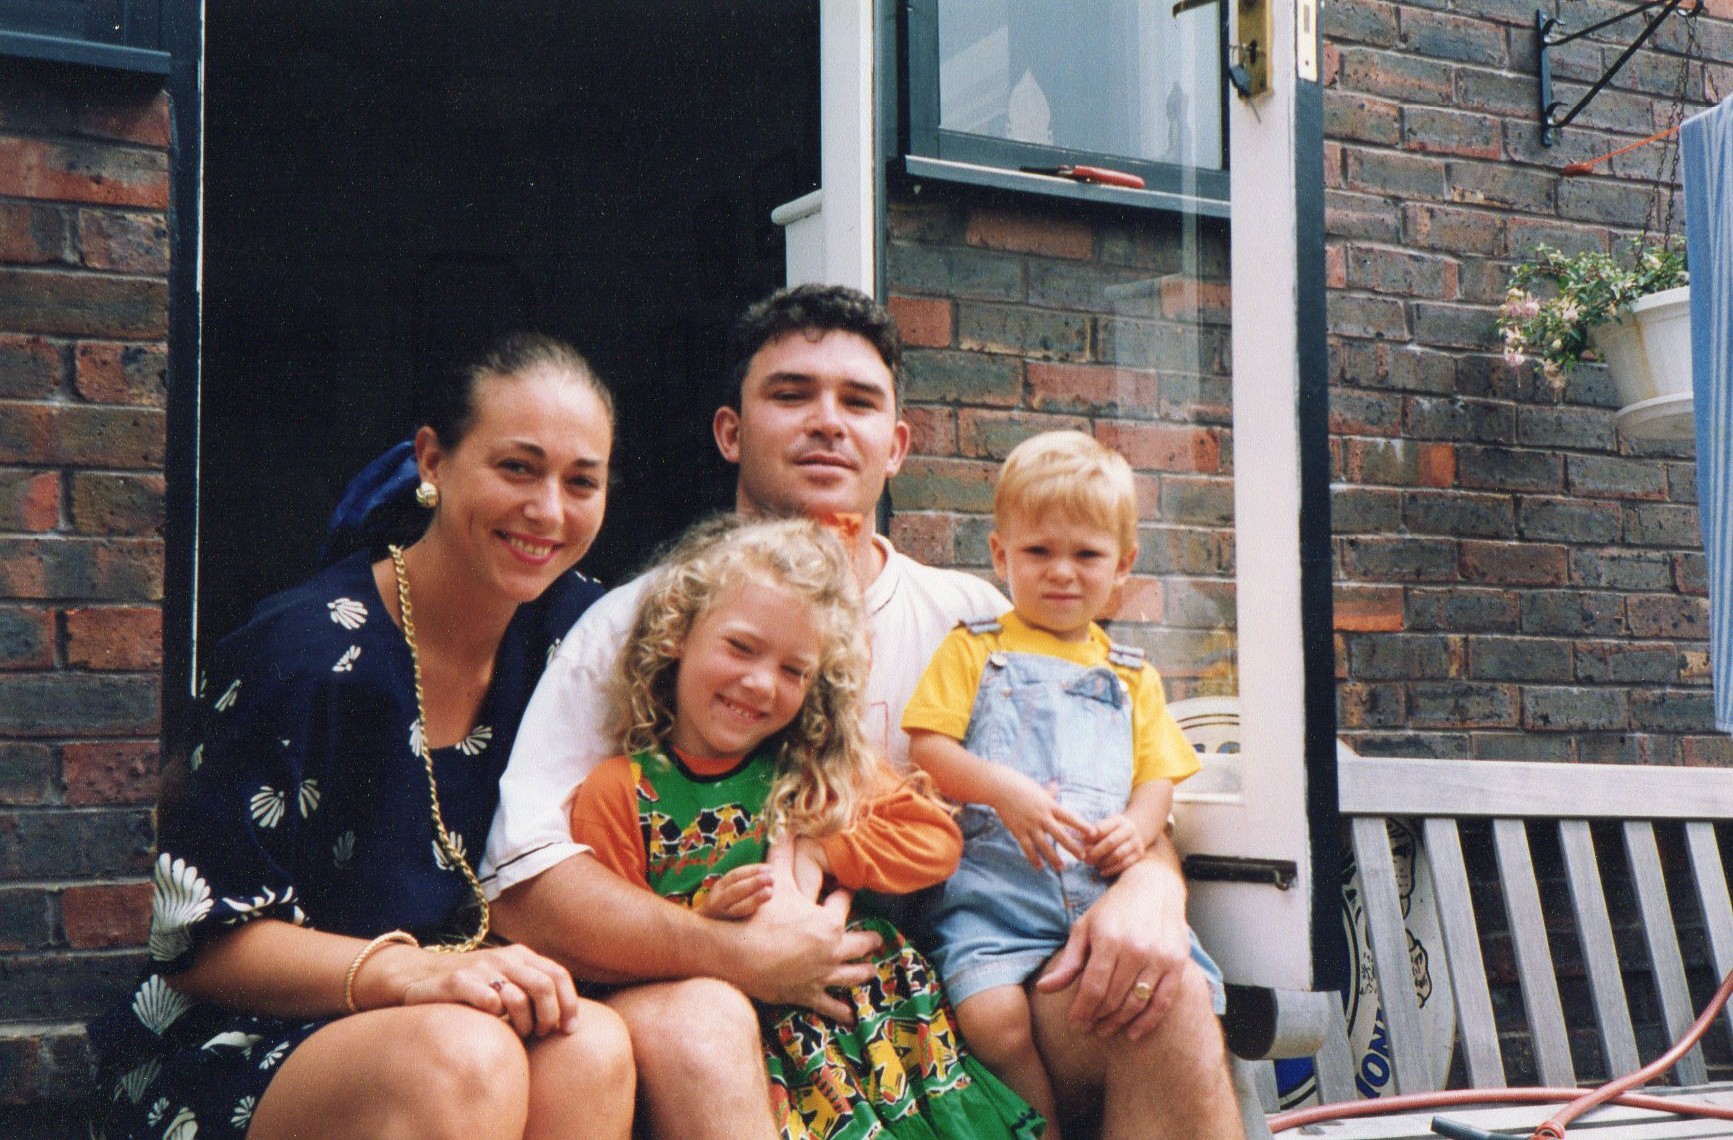 Joe with mum Tina, dad Donald and sister Frankie